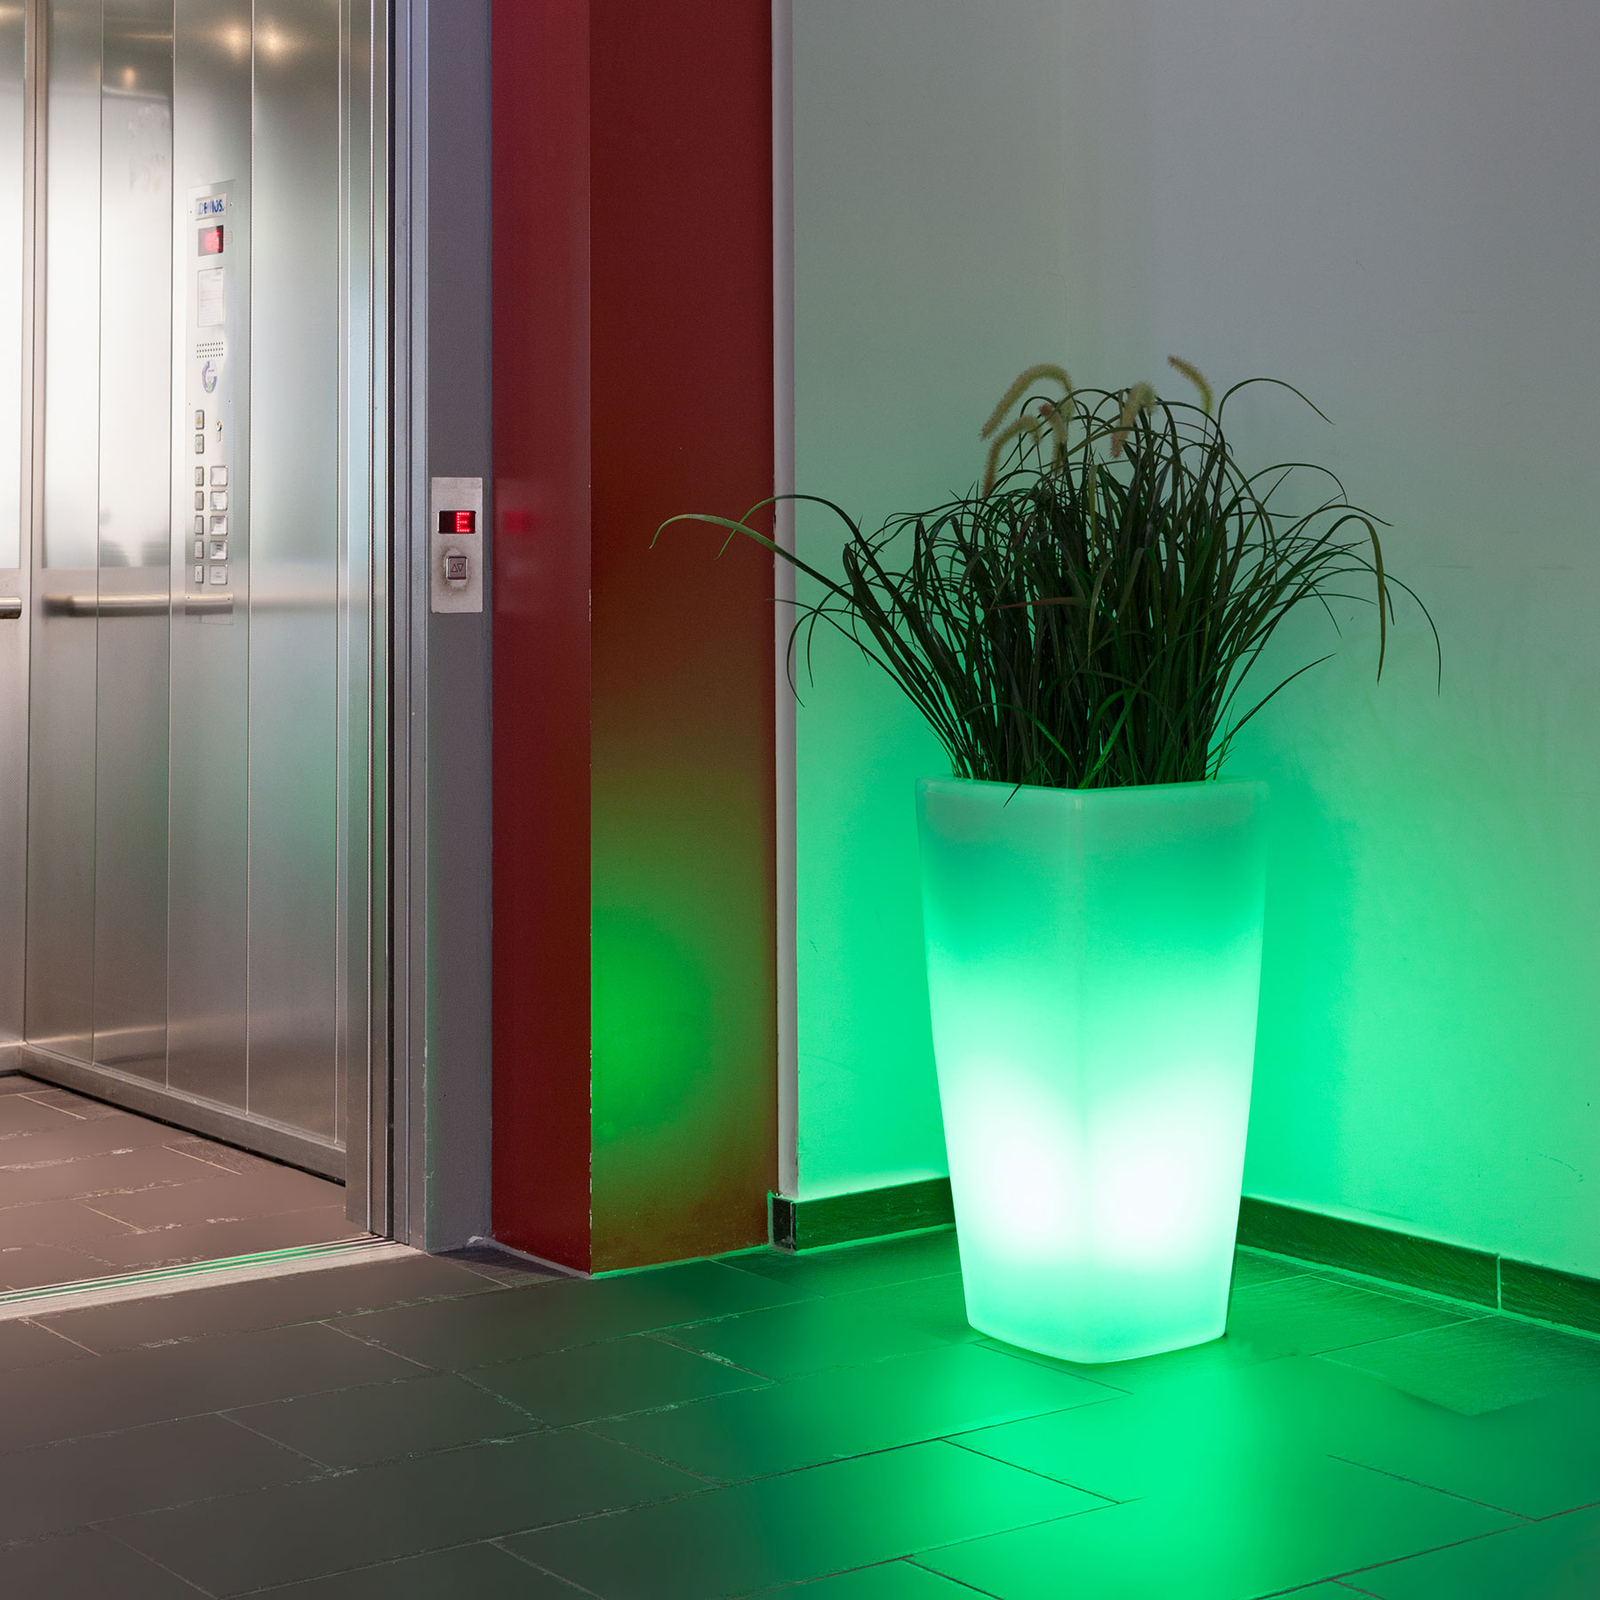 Dekorativní svítidlo Trevia V LED RGBW, bílé, vhodné k výsadbě